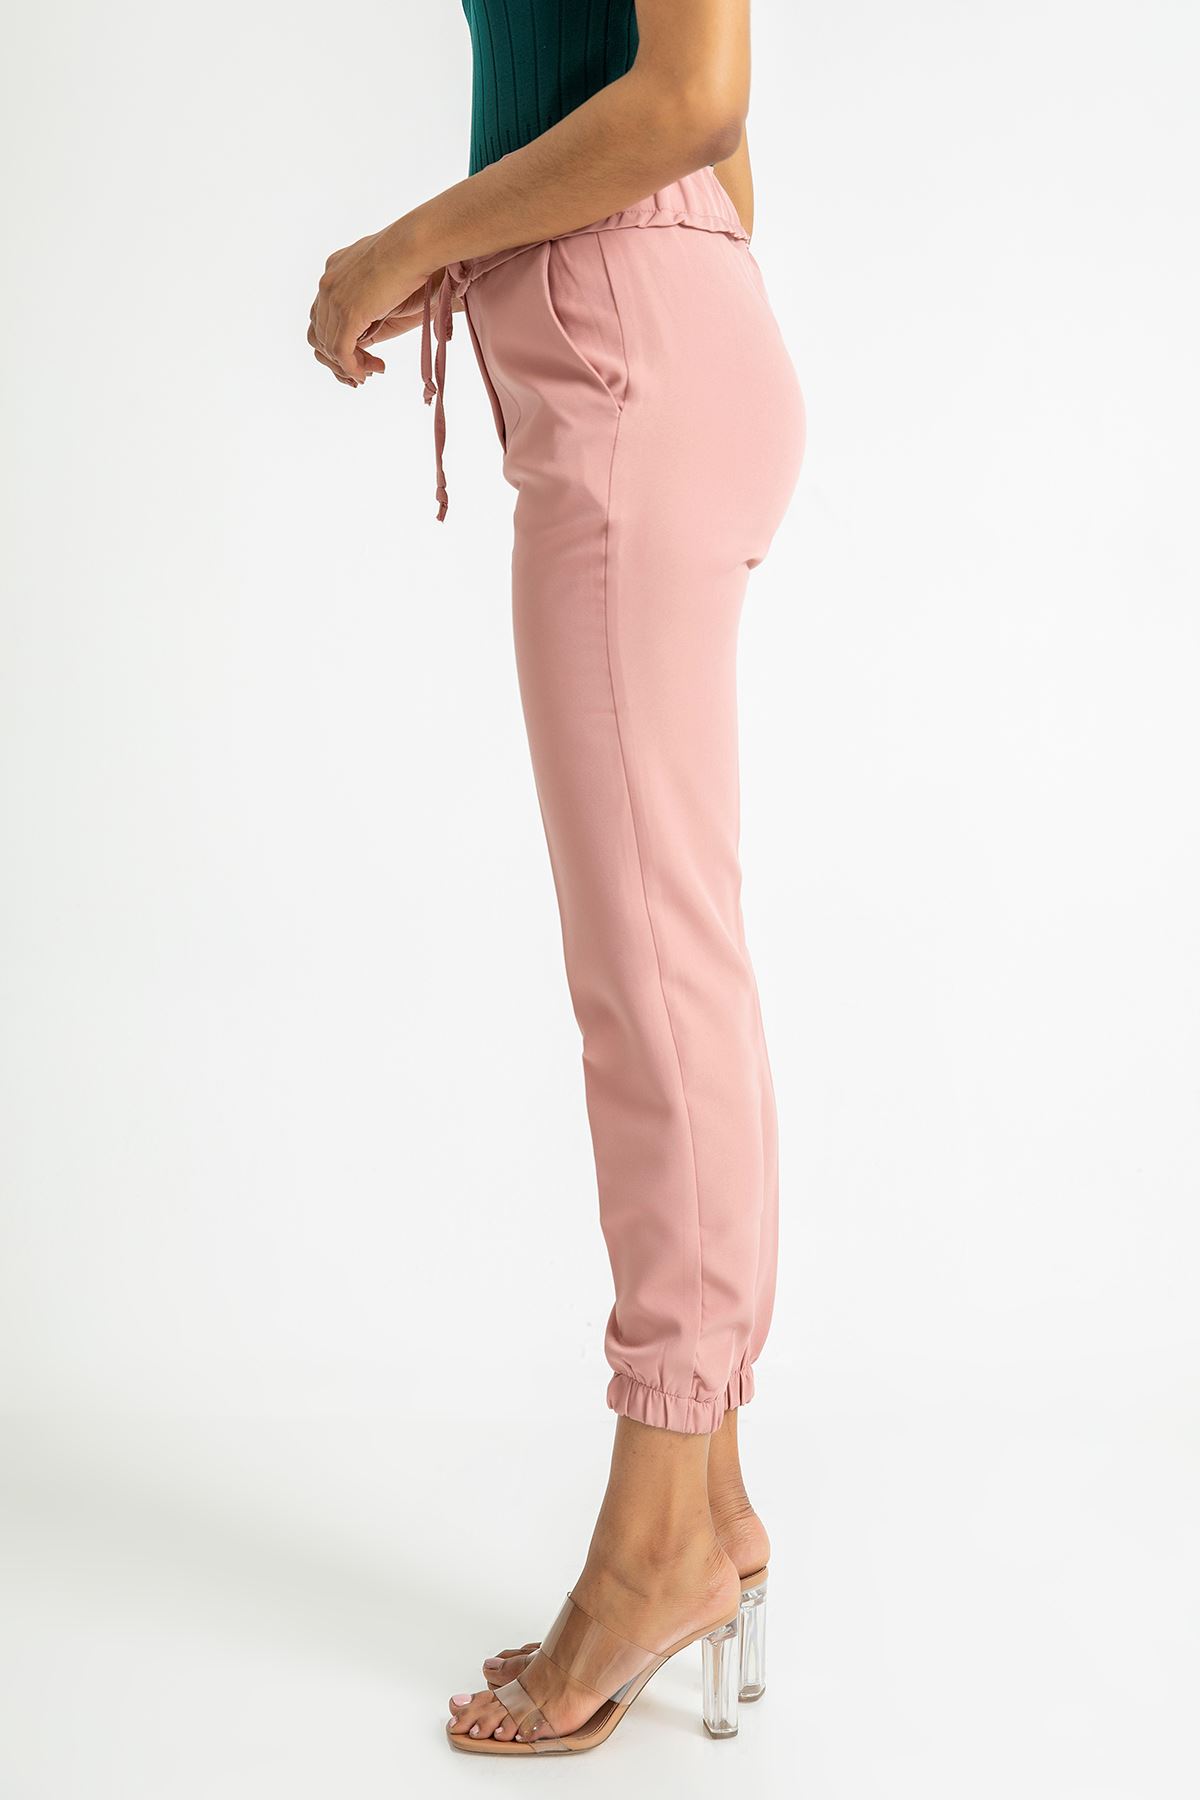 атласный ткань Женские брюки с эластичной резинкой на талии - Светло розовый